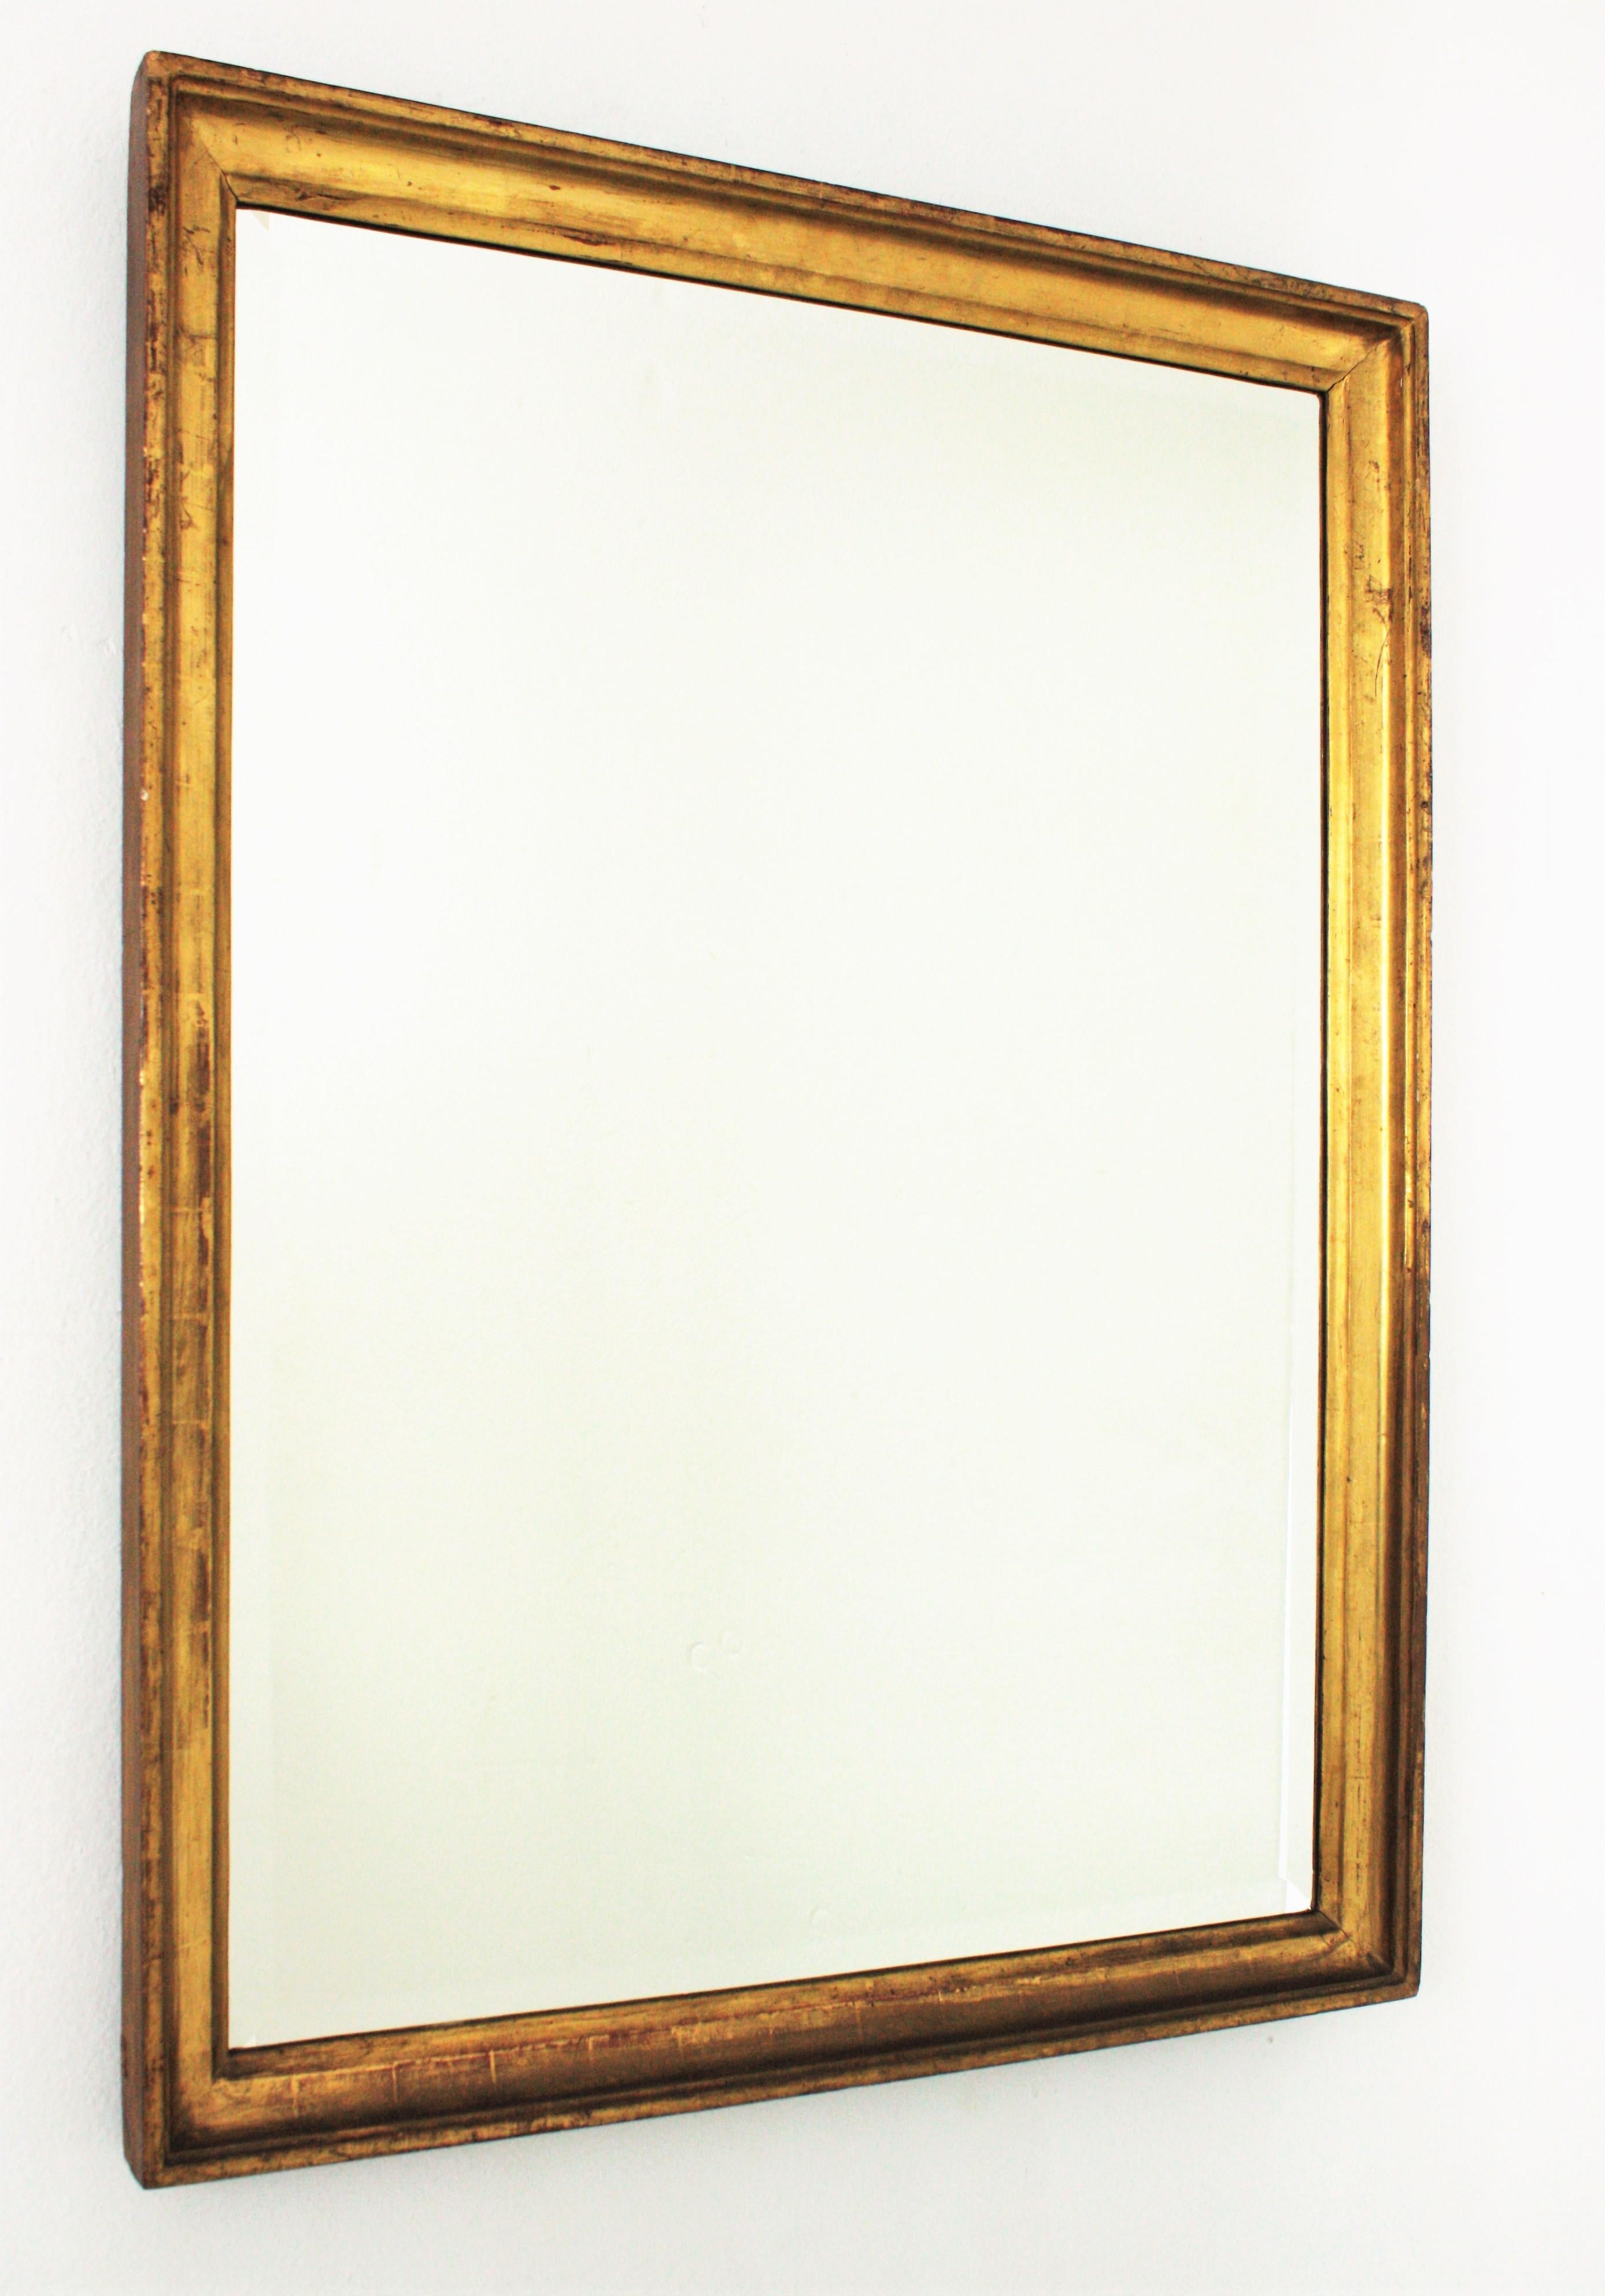 Eleganter rechteckiger Spiegel aus spanischem Blattgold aus dem 19. Jahrhundert mit abgeschrägtem Glas.
Empire-Stil.
Hergestellt aus geschnitztem Holz, Gesso und 24-karätigem Blattgold. Es hat eine schöne gealterte Patina.
Er ist eine gute Wahl